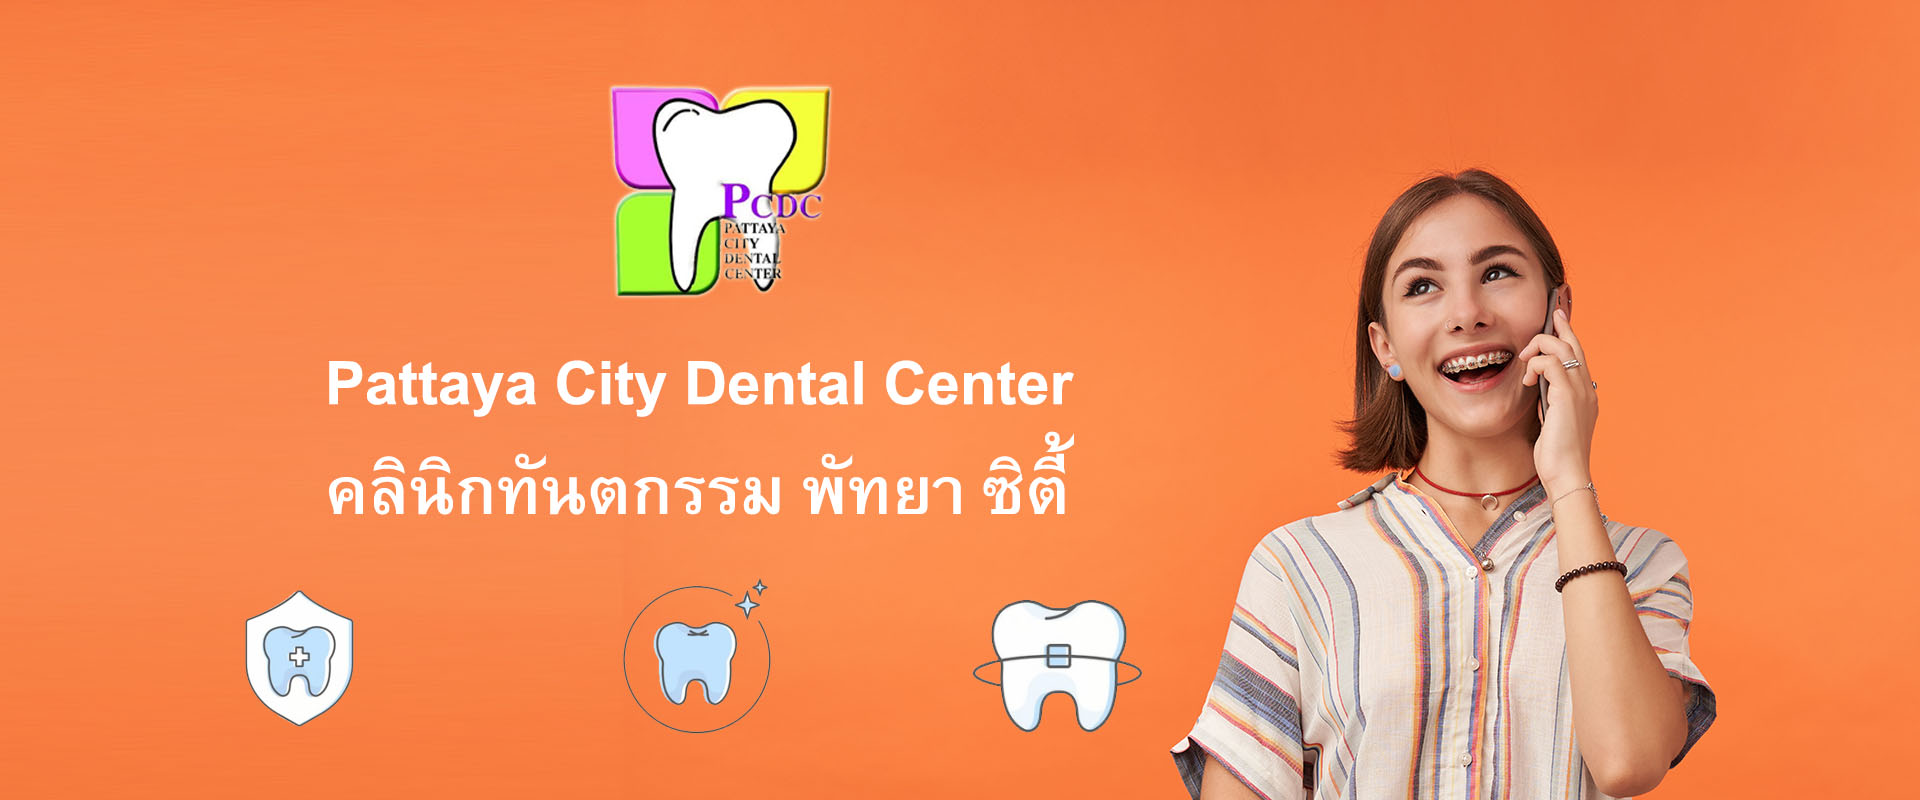 คลินิกทันตกรรม พัทยา, Pattaya City Dental Center, รับทำฟัน, จัดฟัน, ขูดหินปูน, ขัดฟัน, ฟอกฟันขาว